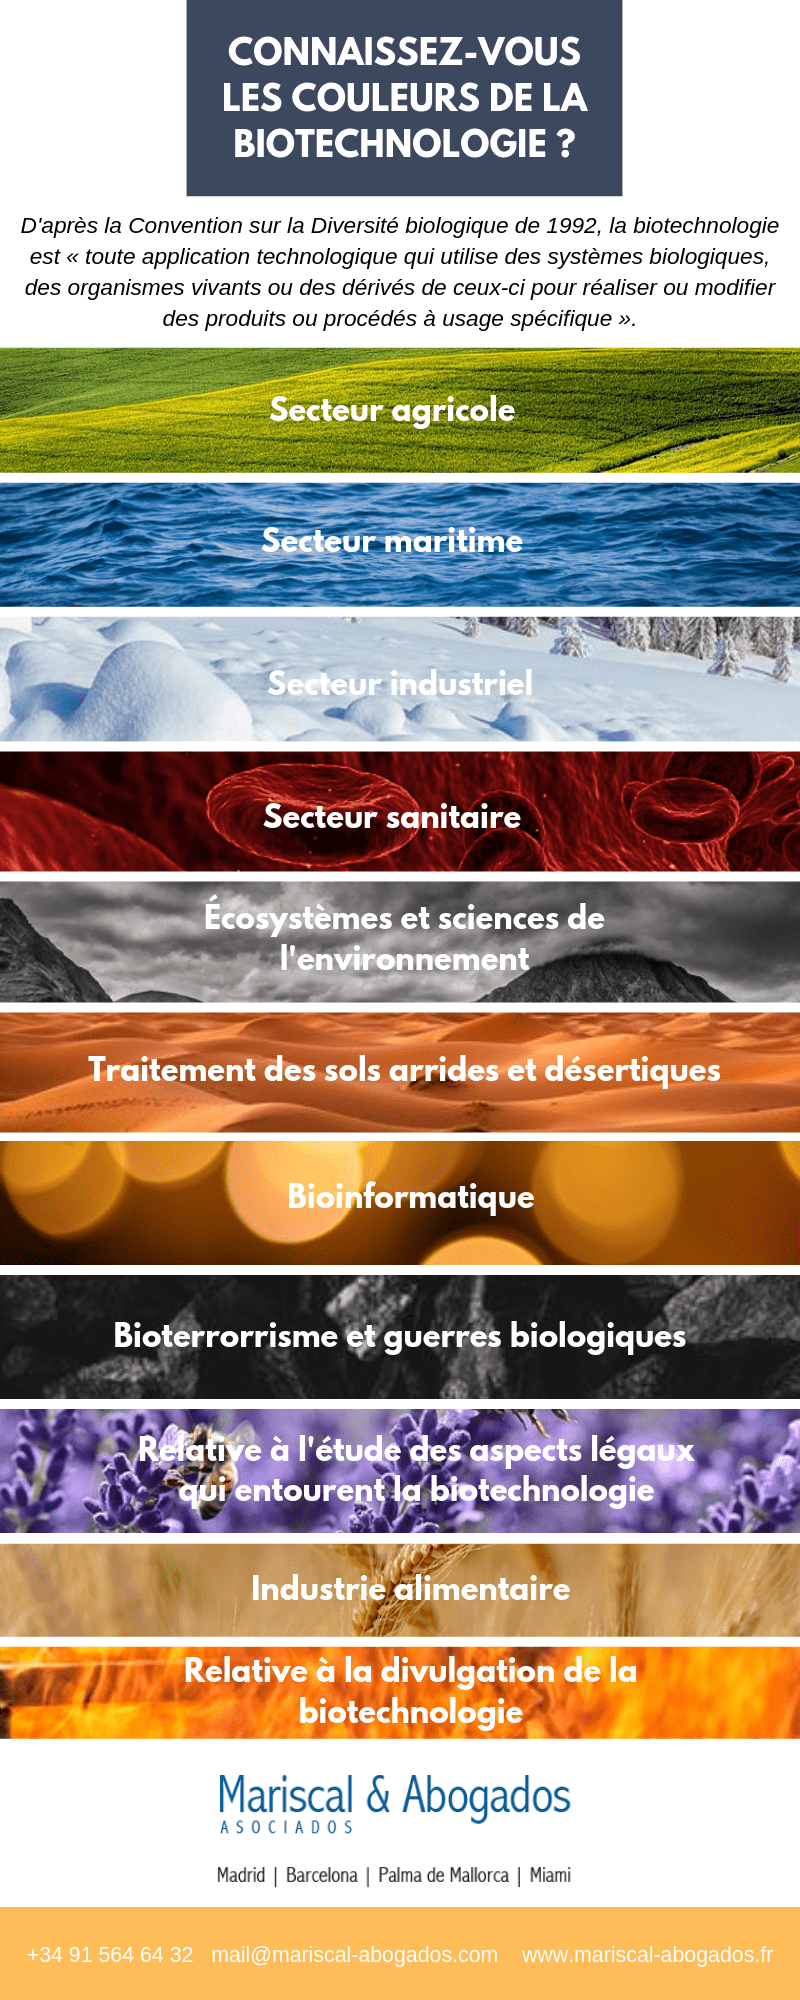 58 2016 Connaissez-vous les couleurs de la biotechnologie _